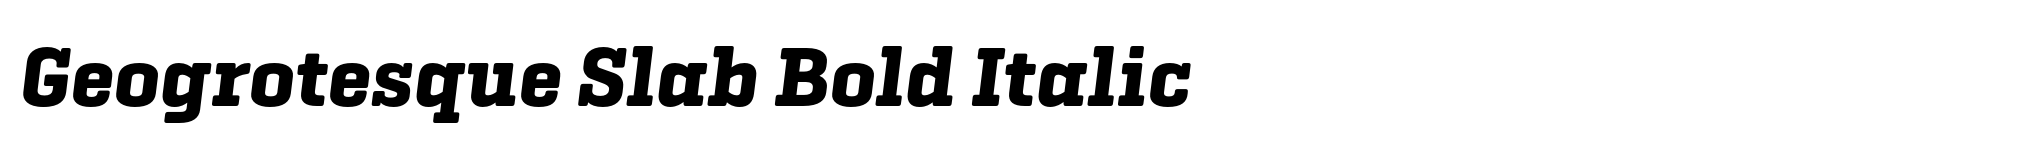 Geogrotesque Slab Bold Italic image